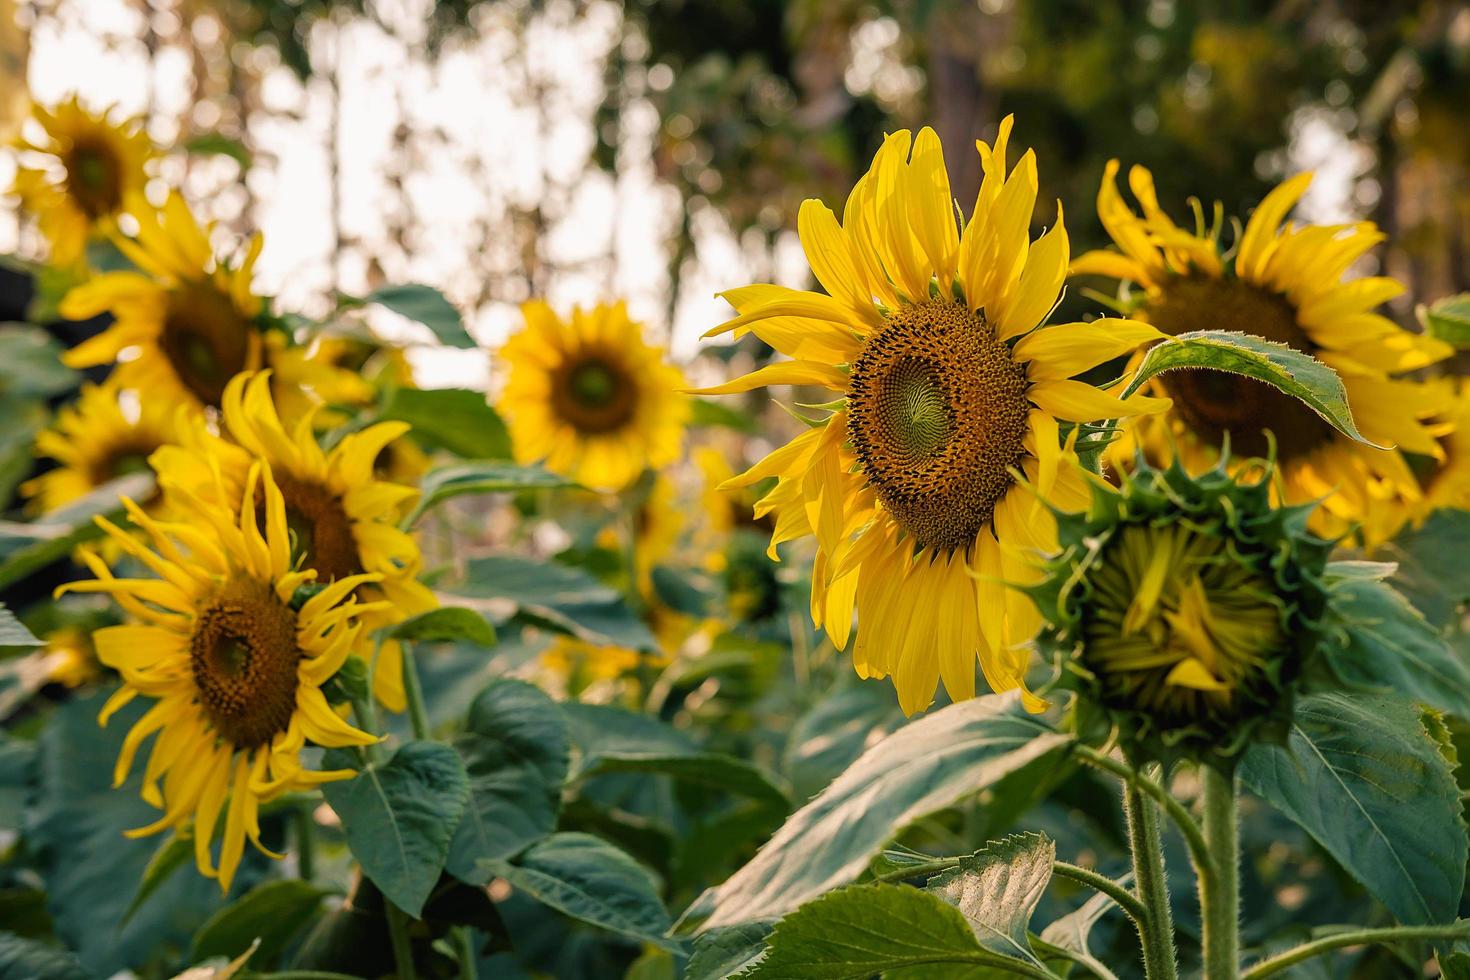 Feld der Sonnenblumen foto